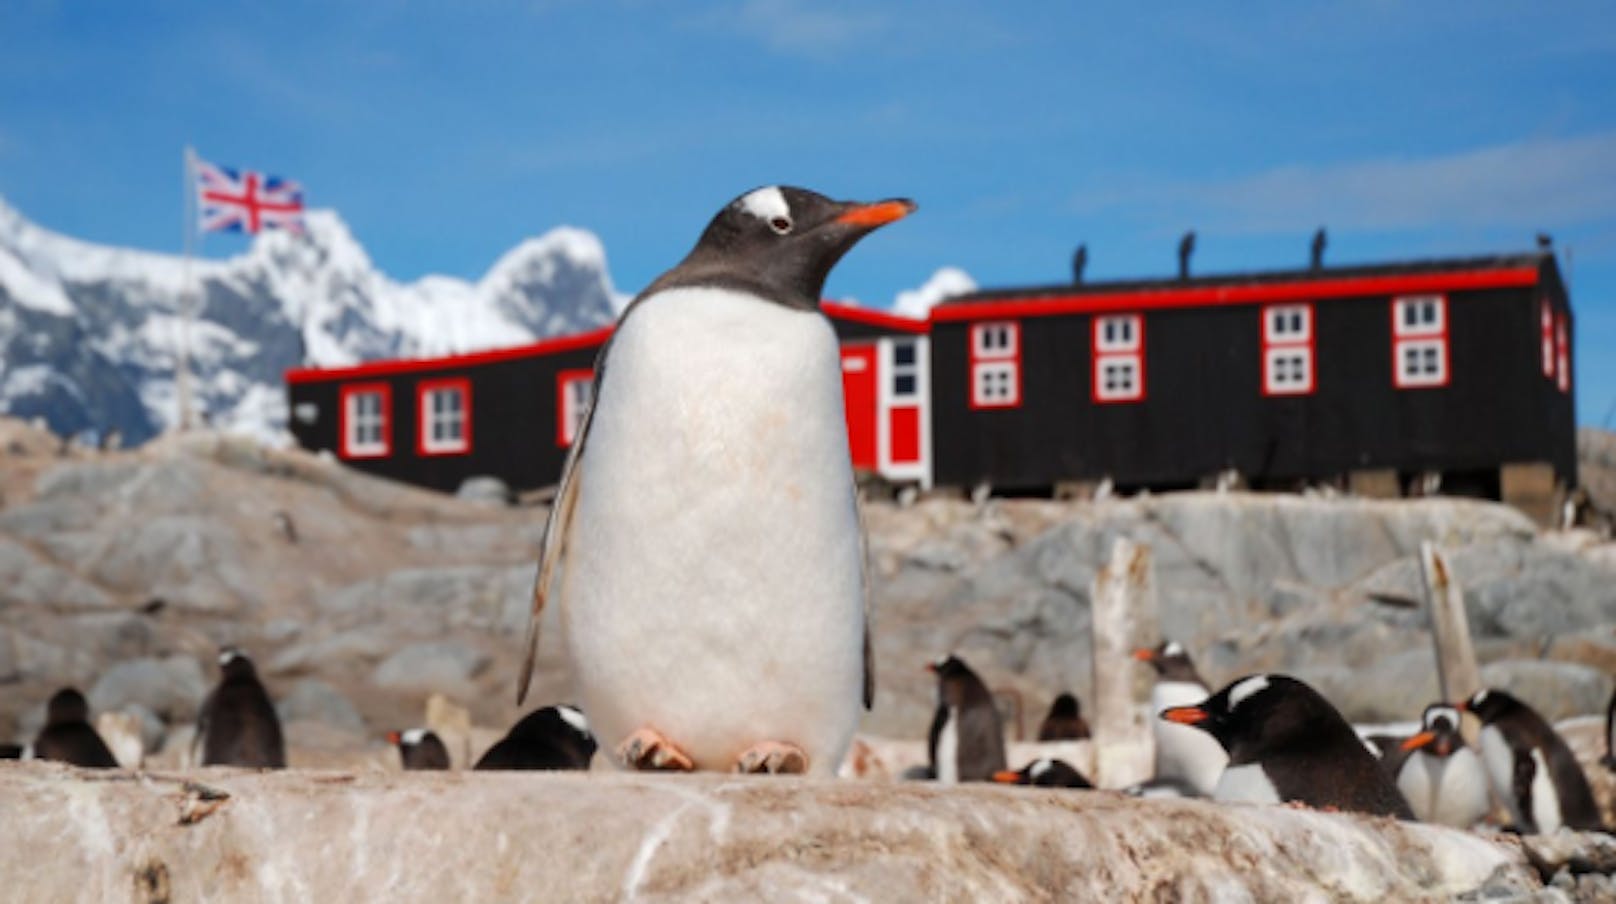 Wer die Einsamkeit und Pinguine nicht scheut und Kälte verträgt, könnte mit diesem Job in der Antarktis glücklich werden.